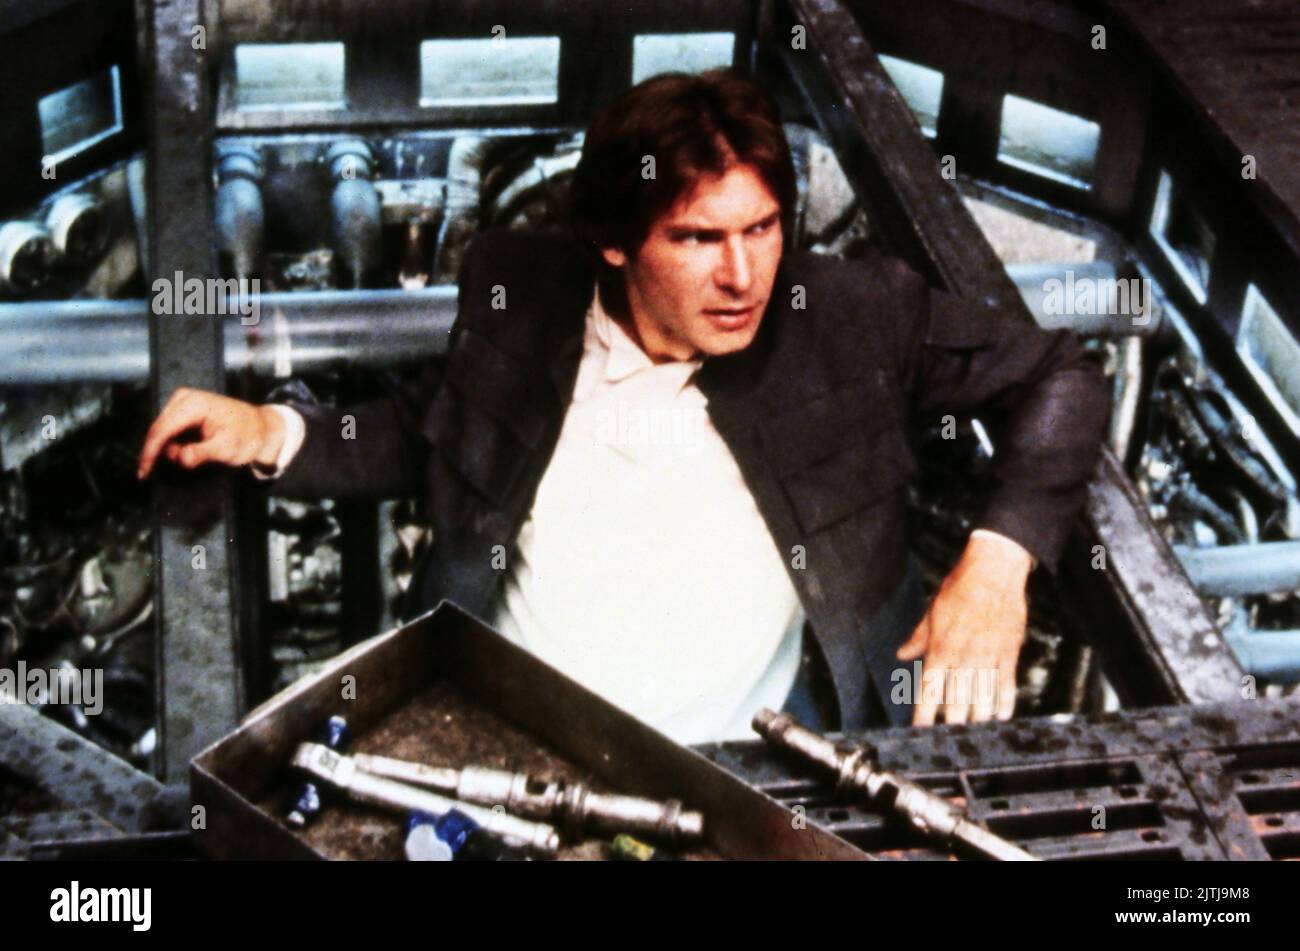 Star Wars, alias Krieg der Sterne, EE.UU. 1977, Región: George Lucas, Darsteller: Harrison Ford Foto de stock